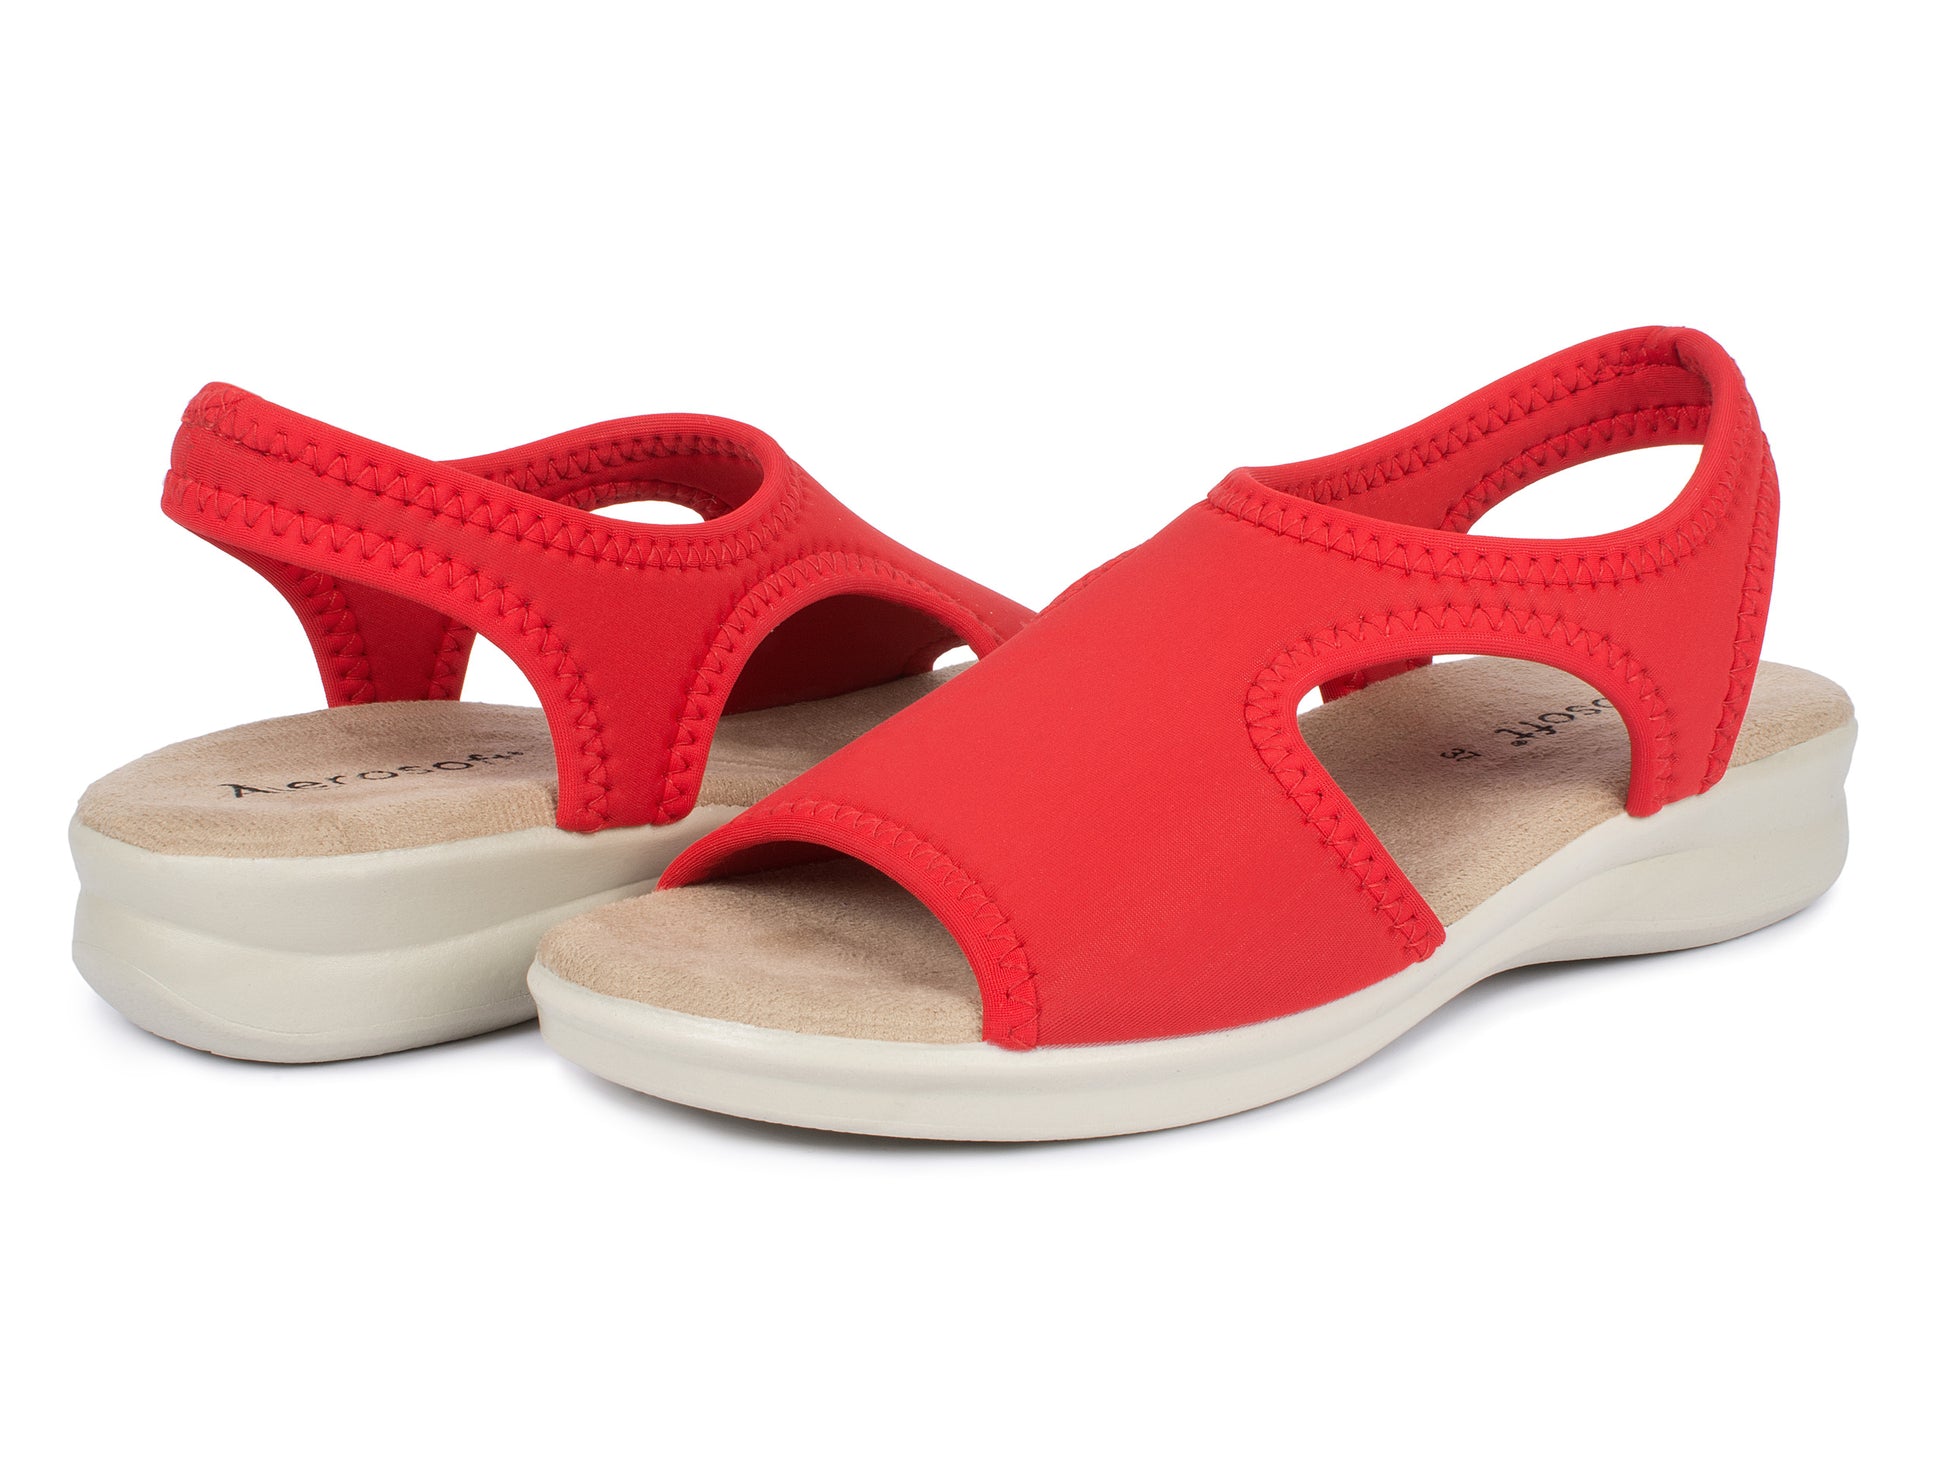 Damen Stretch Sandalette Modell Stretch 05 von Aerosoft in der Farbe rot als Schuh-Paar